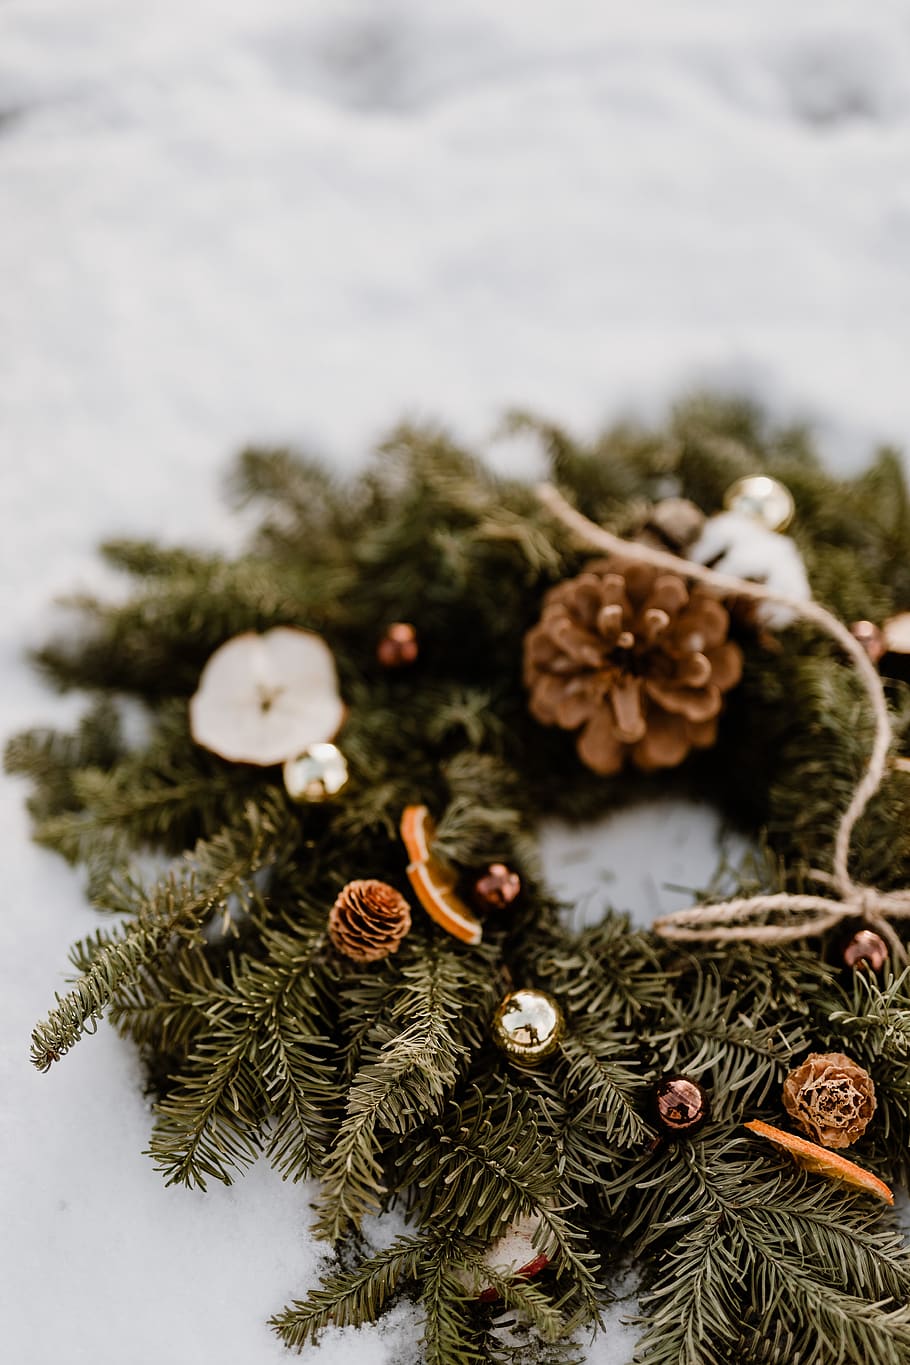 natal, decoração, decorações, dezembro, neve, Inverno, Coroa de flores, árvore, decoração de natal, árvore de natal